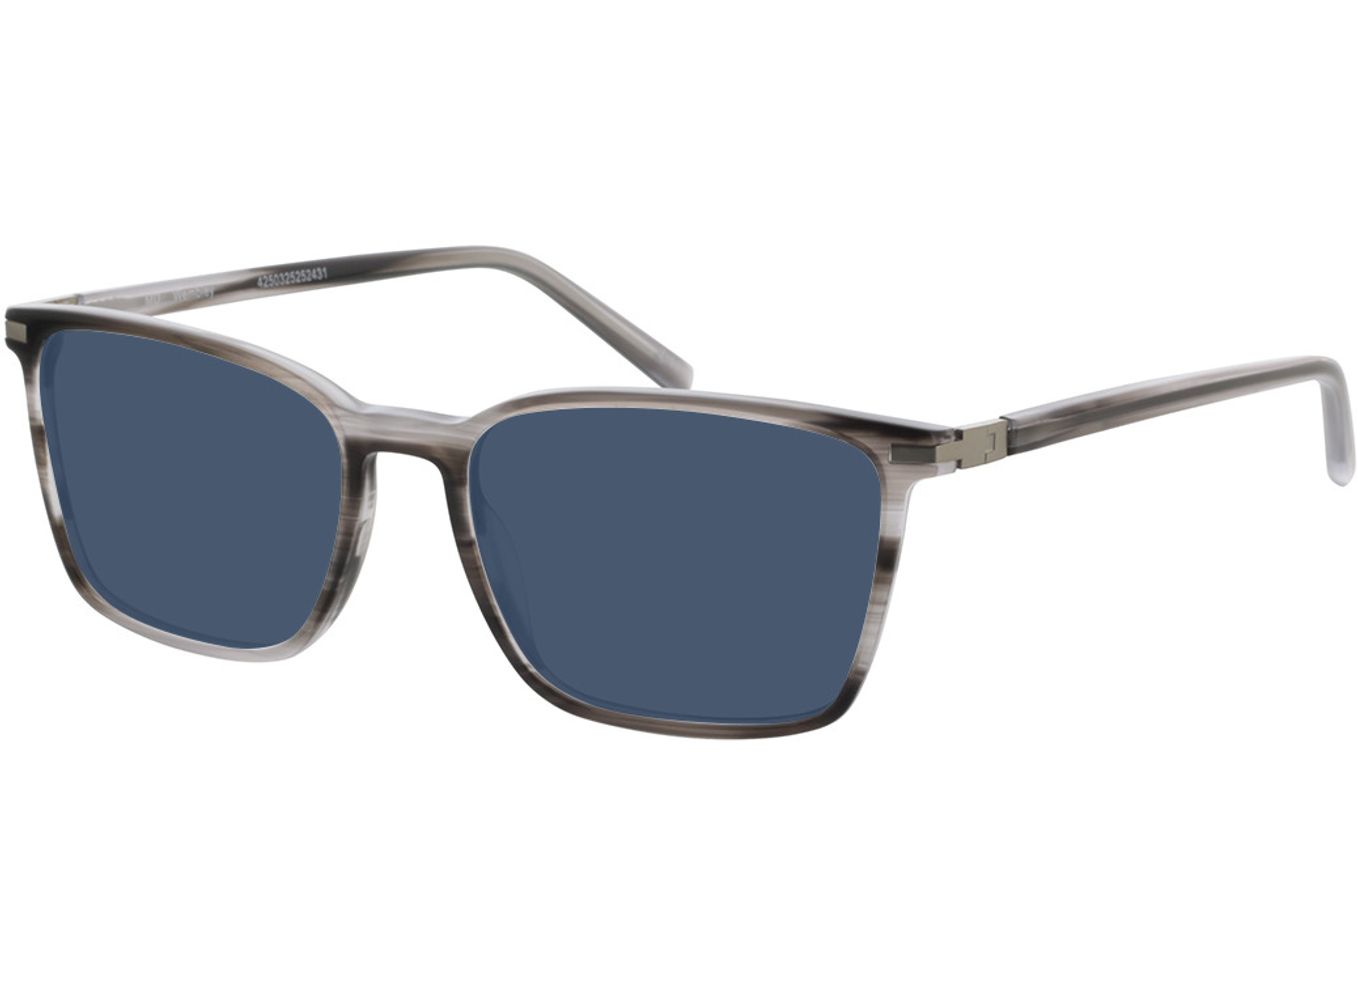 Wembley - grau/silber Sonnenbrille mit Sehstärke, Vollrand, Eckig von Brille24 Collection